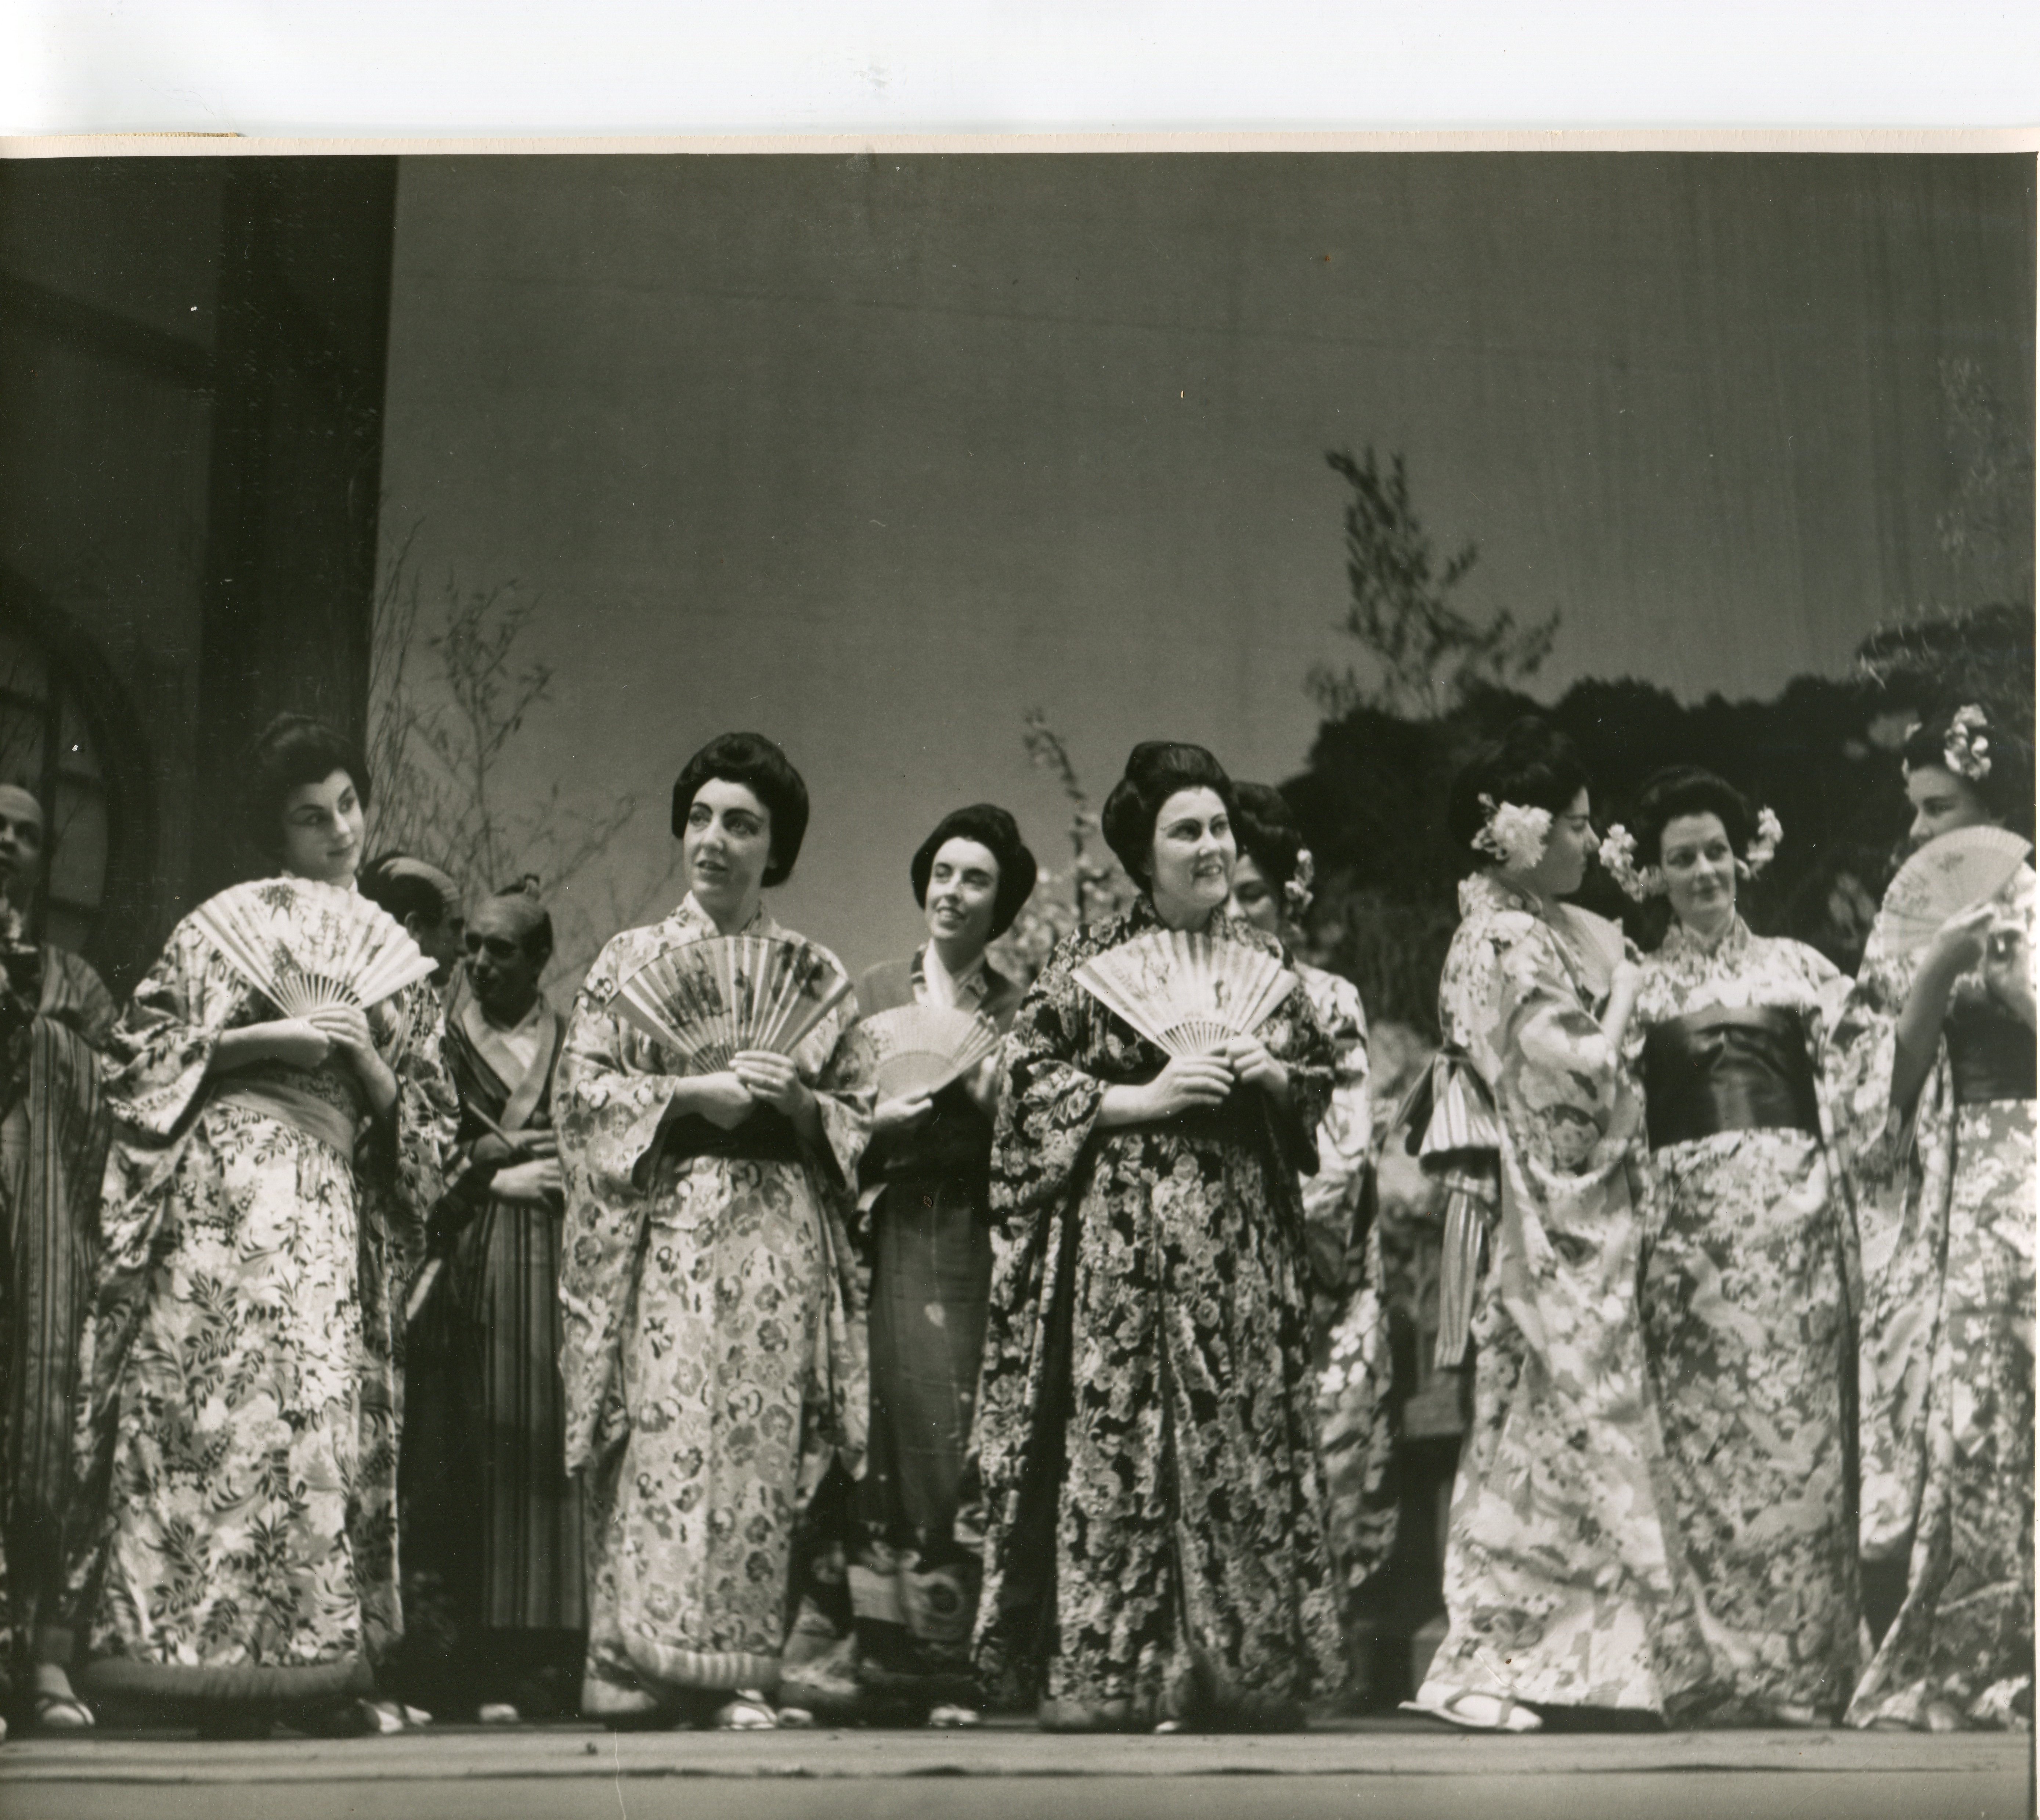 Chorus women 1950